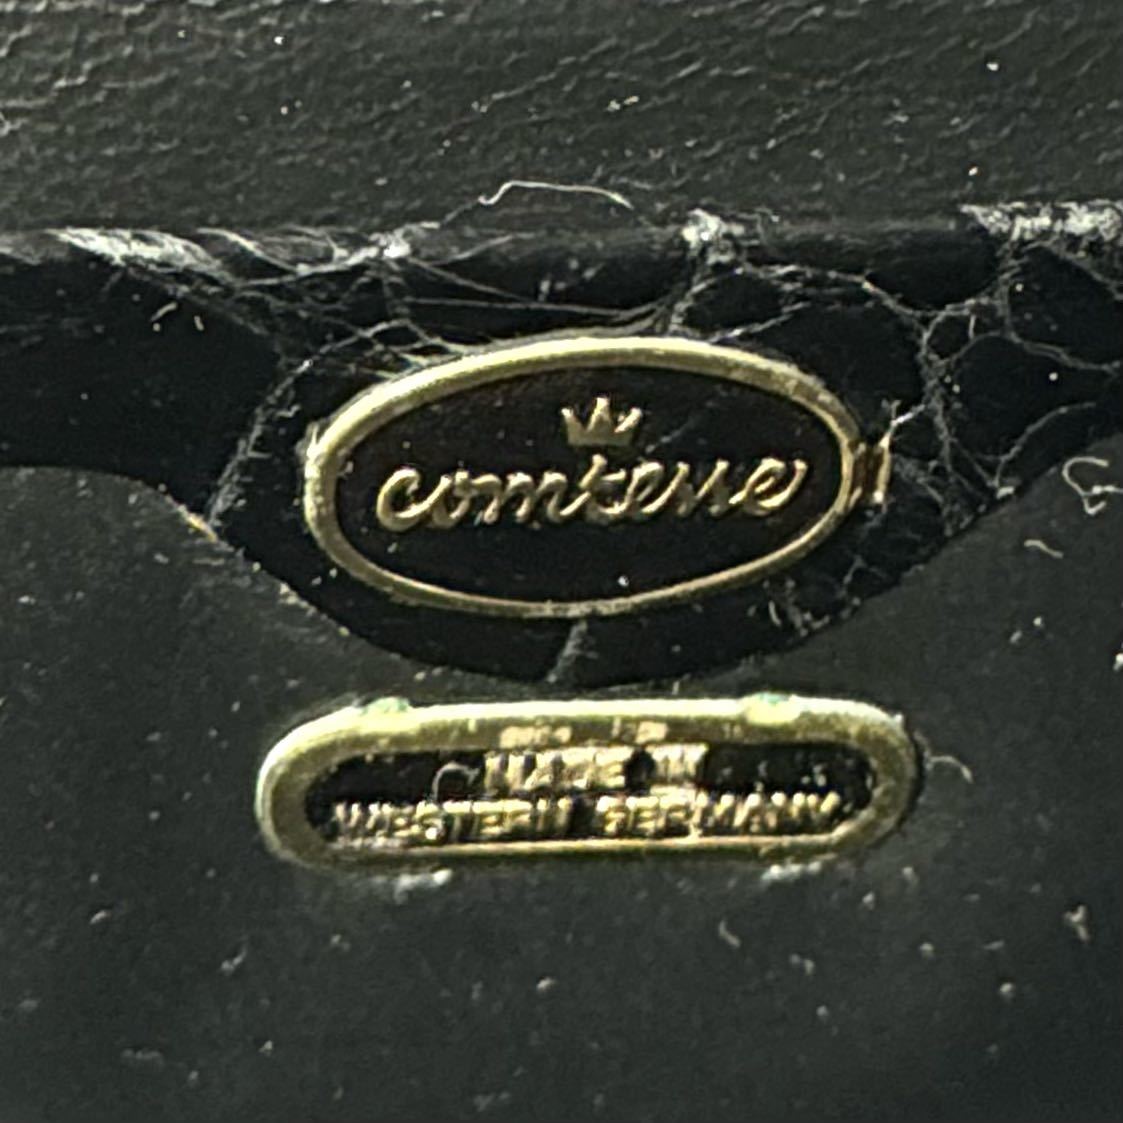 COMTESSE コンテス クロコダイル ブラック 黒 ゴールド金具 ハンドバッグ トートバッグ ショルダーバッグ ドイツ製 レディース セレブ 上品